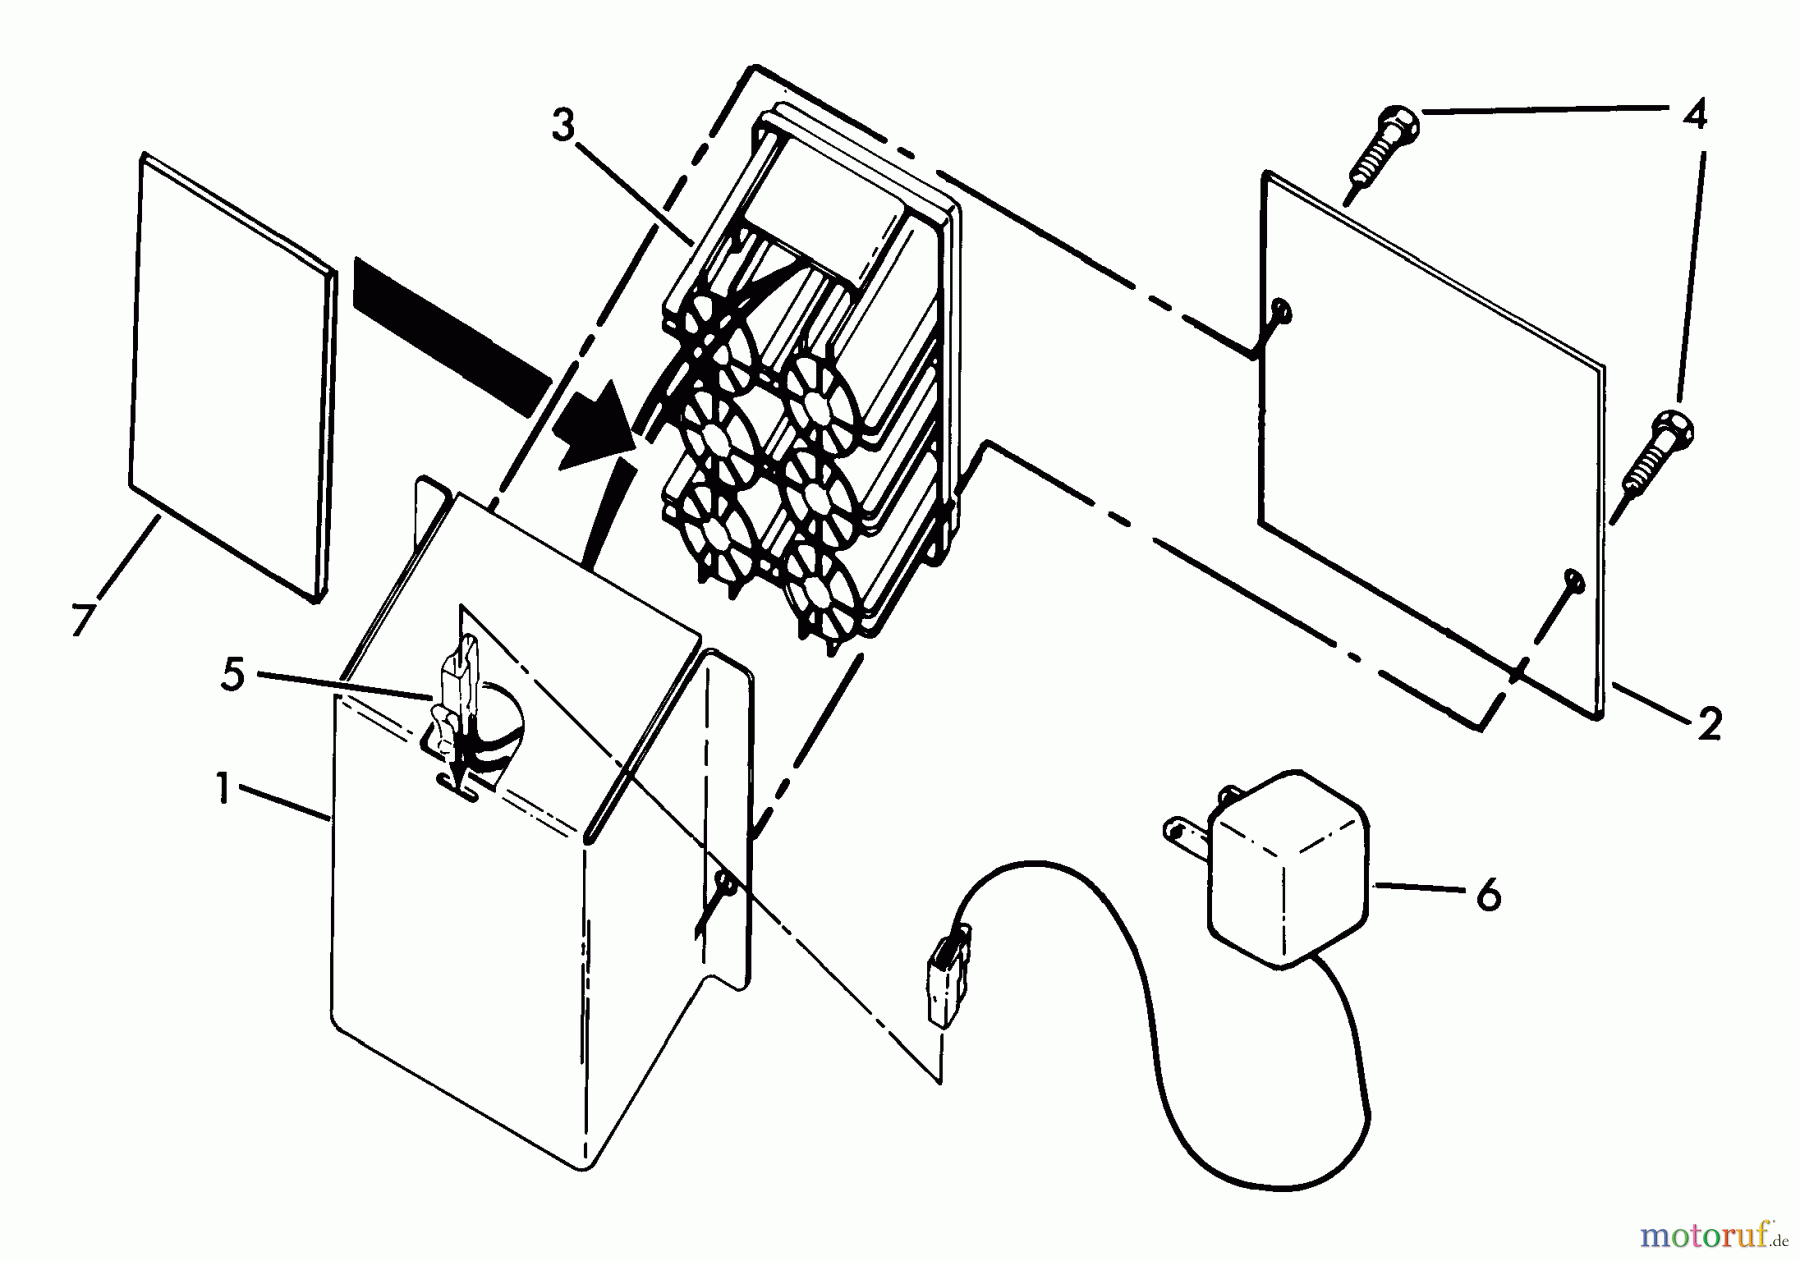  Husqvarna Rasenmäher 56 SFEB (954050901) - Husqvarna Walk-Behind Mower (1999-12 & After) Gear Case Assembly (Part 2)